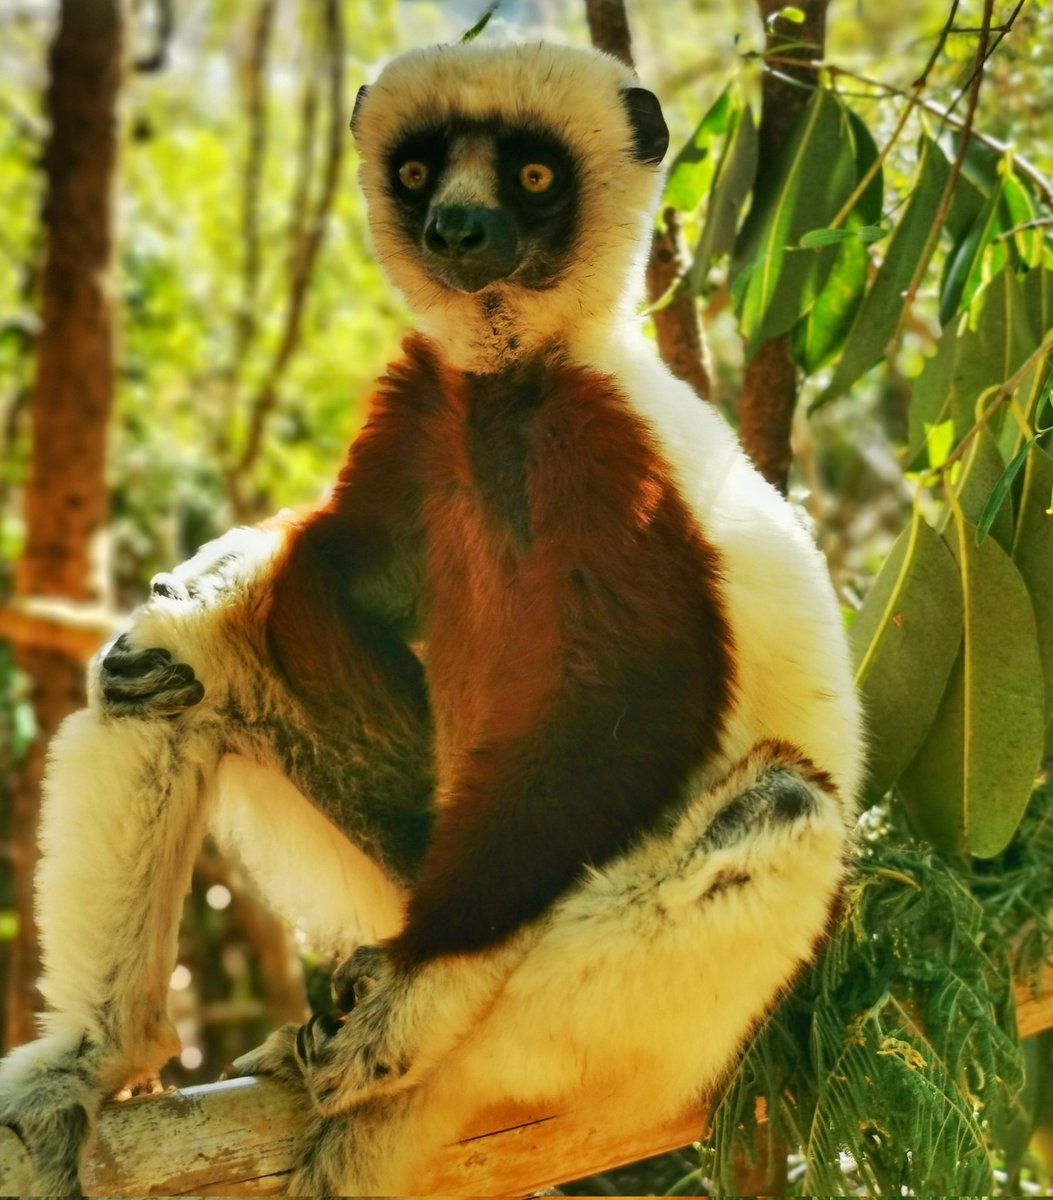 LEMUR adece Madagaskar'da yaşayan bir hayvan türü. Madagaskar büyük bir ada ülkesi olunca mitolojik ülke Lemurya aklım geldi.